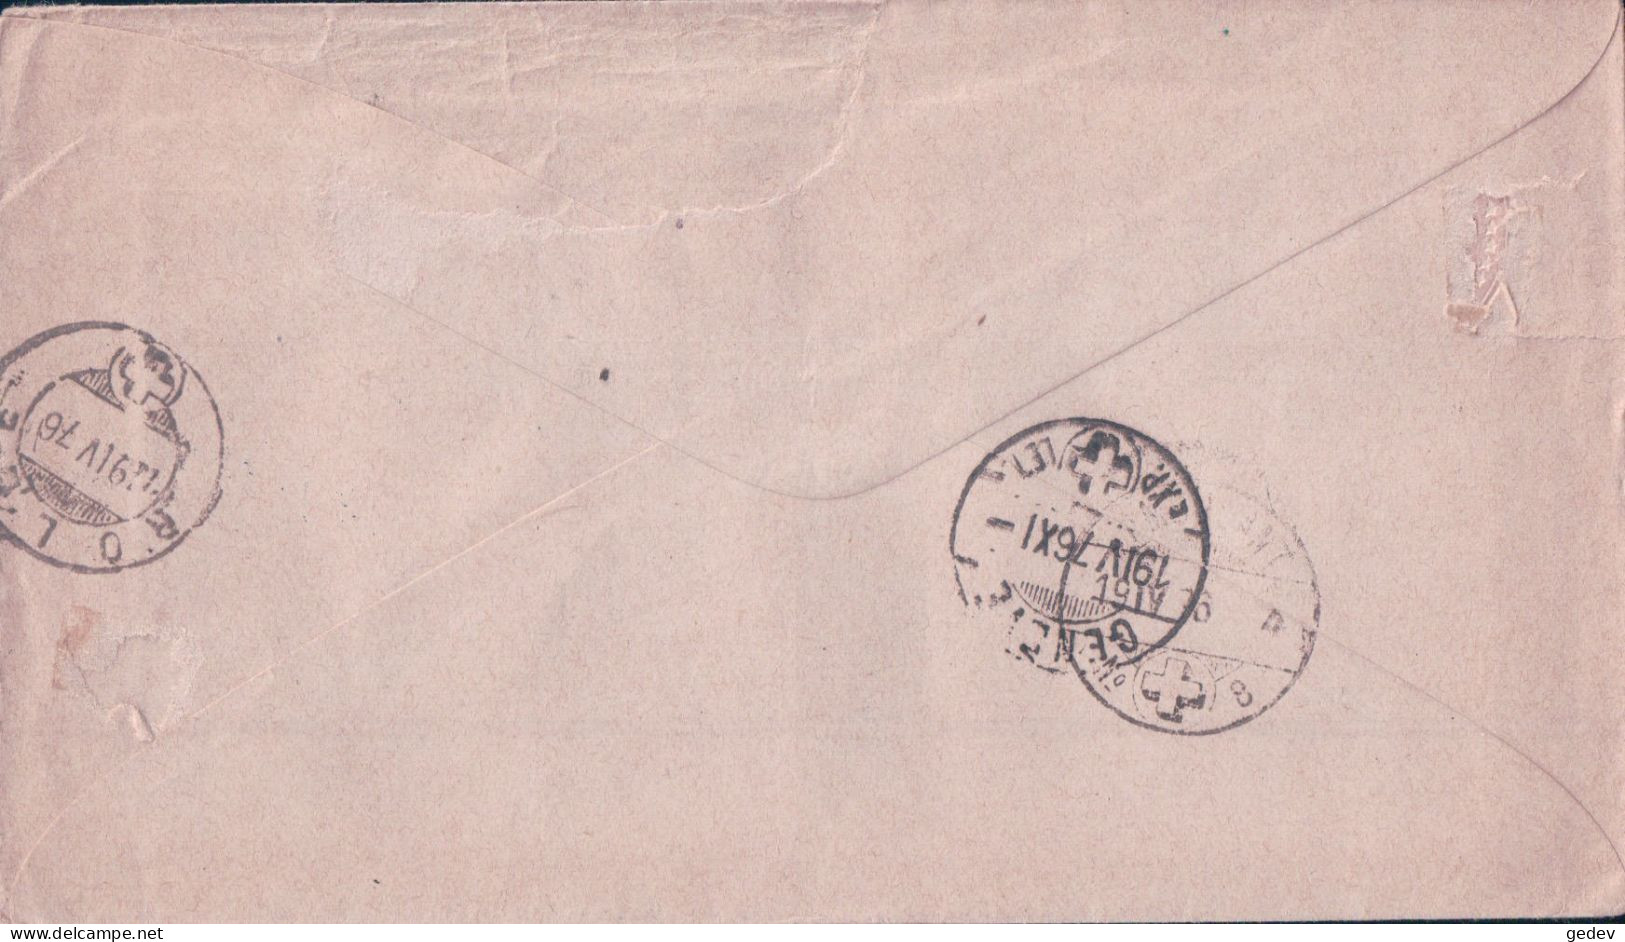 Suisse, Lettre Entier Postal 5 Ct Brun + 3 Timbres, Gimel - Pontarlier - Paris, 18 IV 1876 - Entiers Postaux